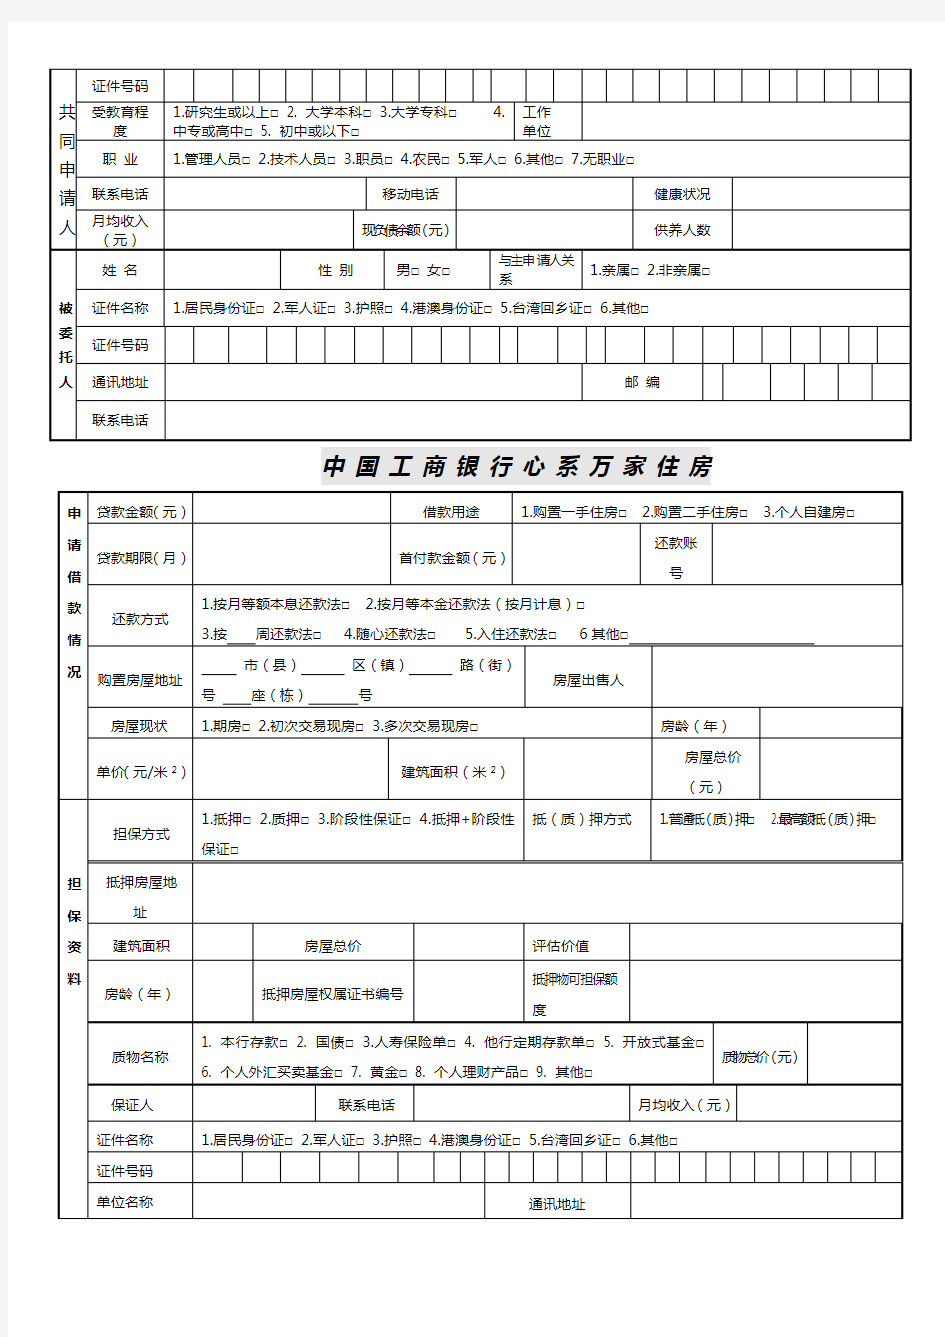 新版中国工商银行个人住房贷款申请表